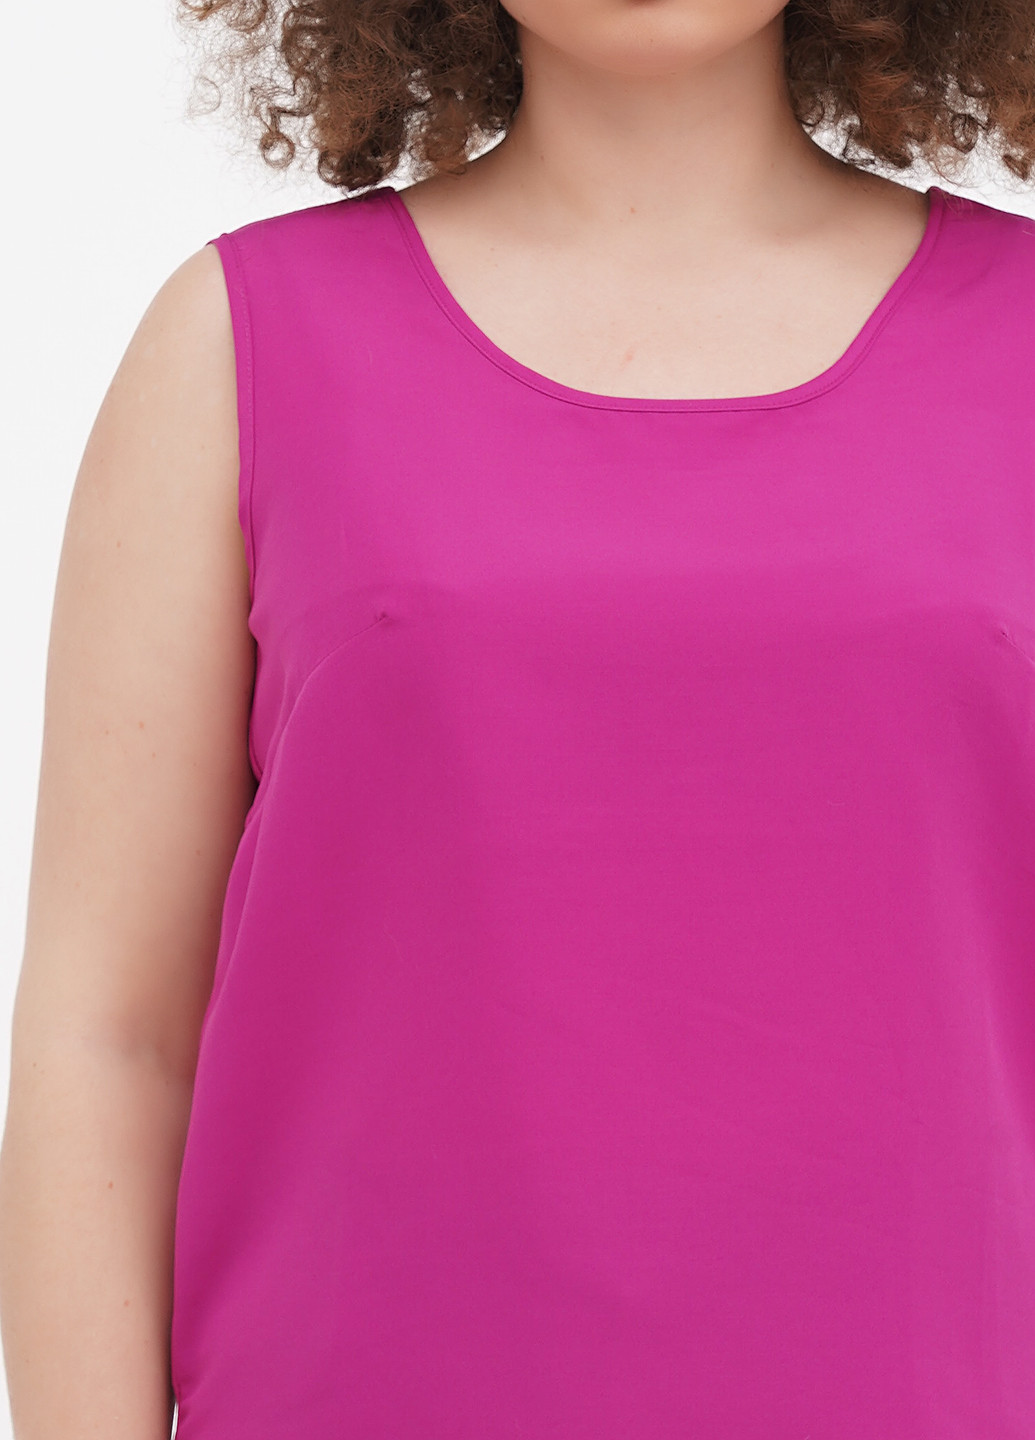 Фіолетова блузка Choise